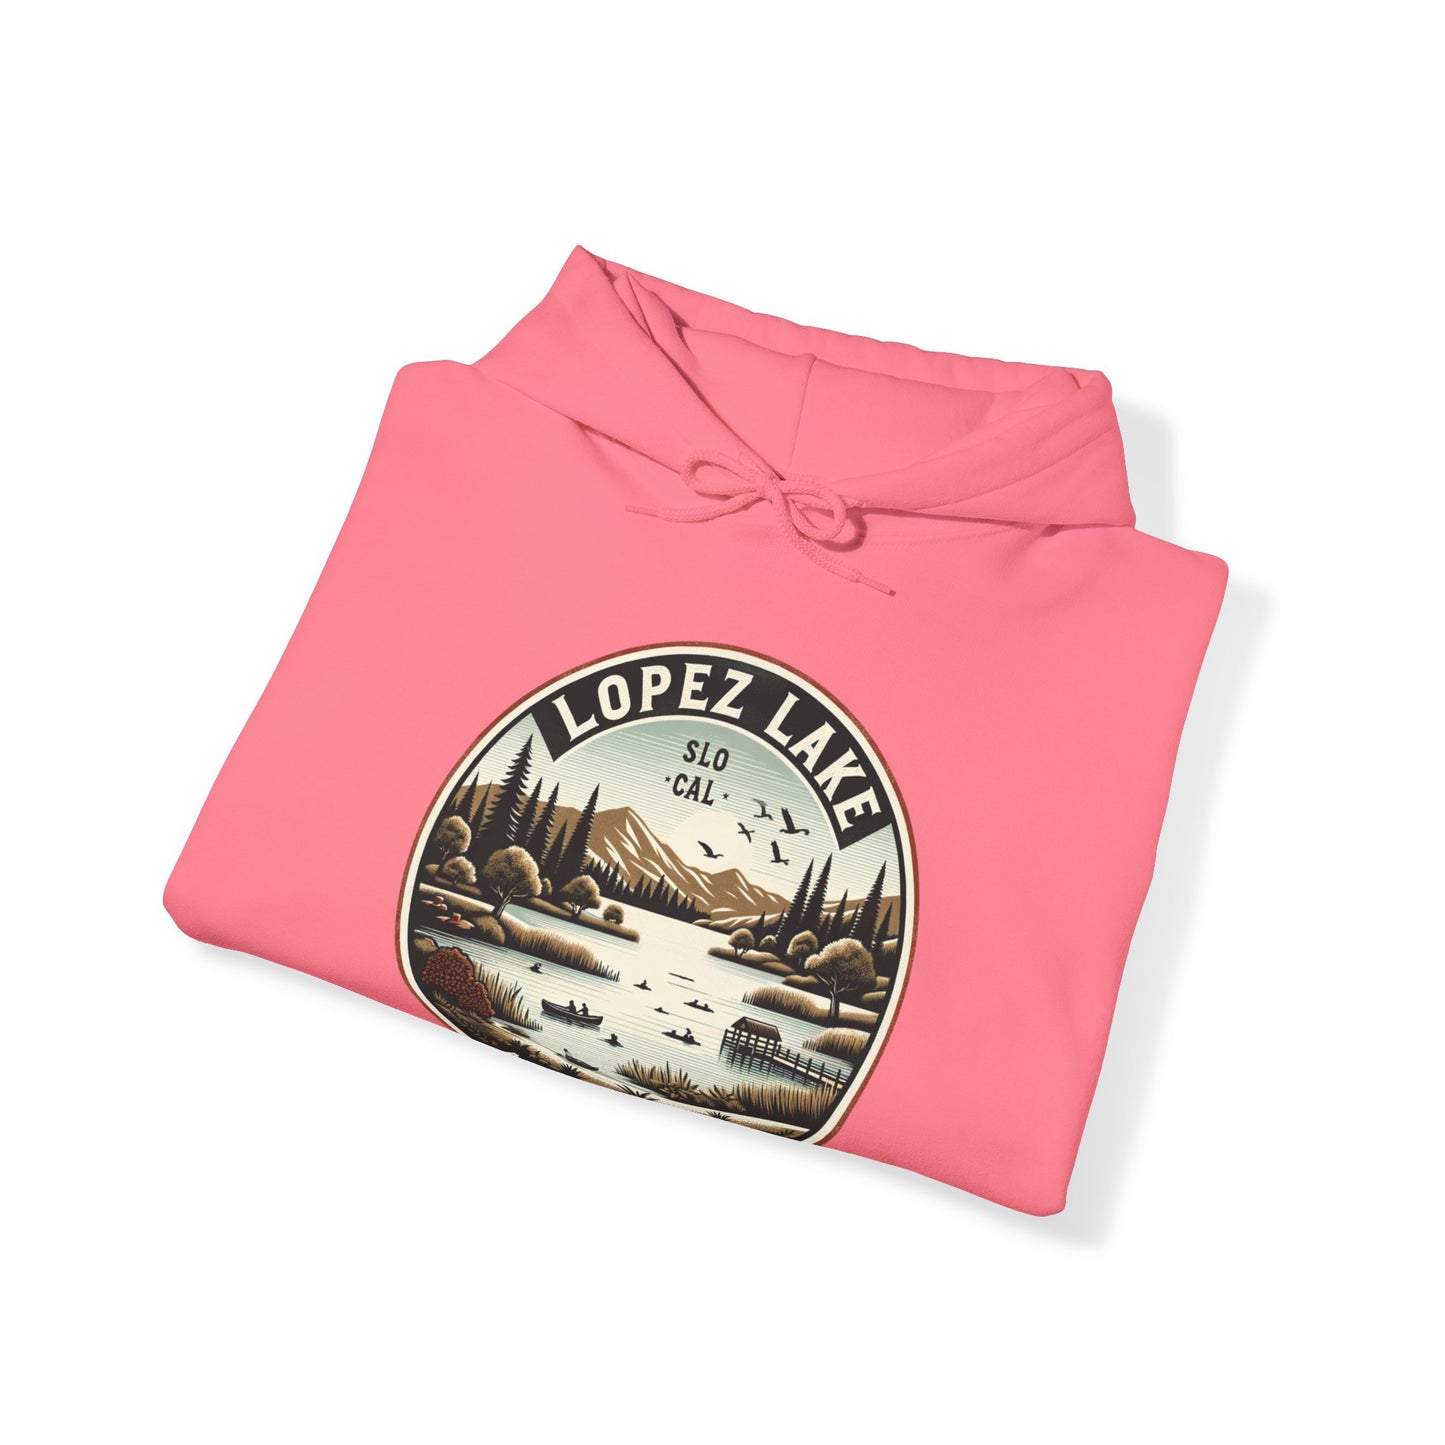 Arroyo Grande Lopez Lake Vintage Tee - SLO CAL Inspired Unisex Heavy Blend™ Hooded Sweatshirt